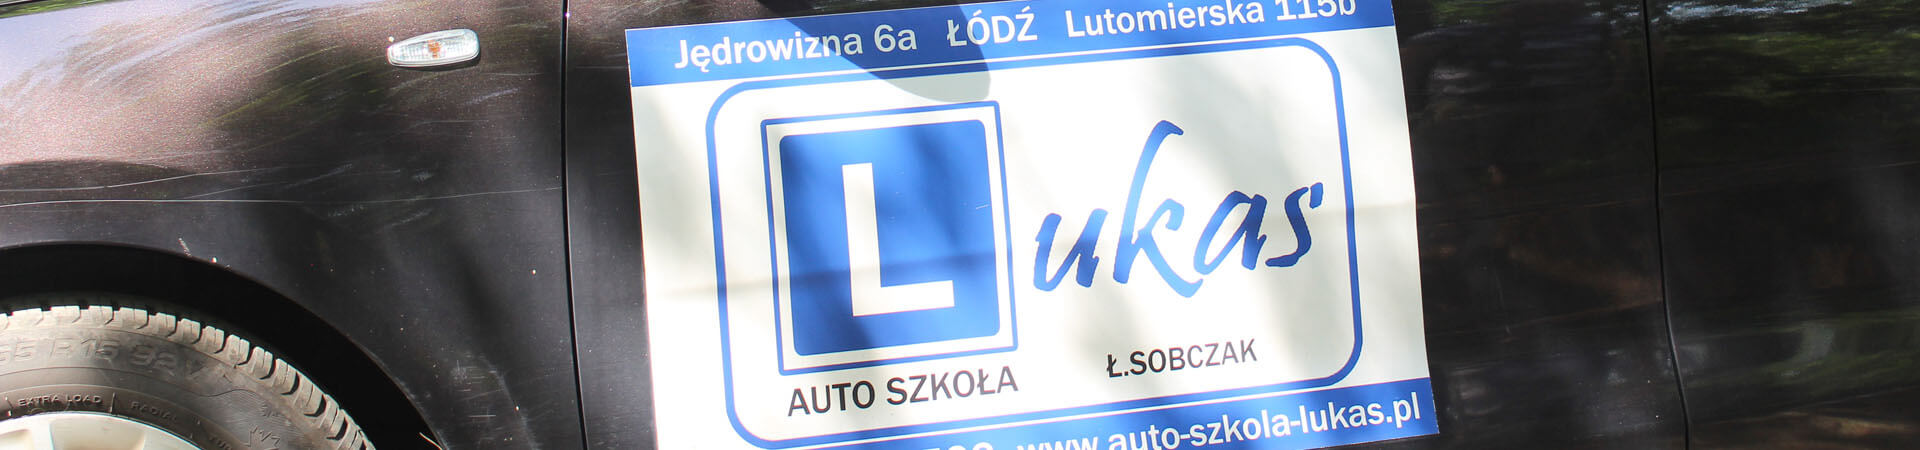 auto szkoła Łódź